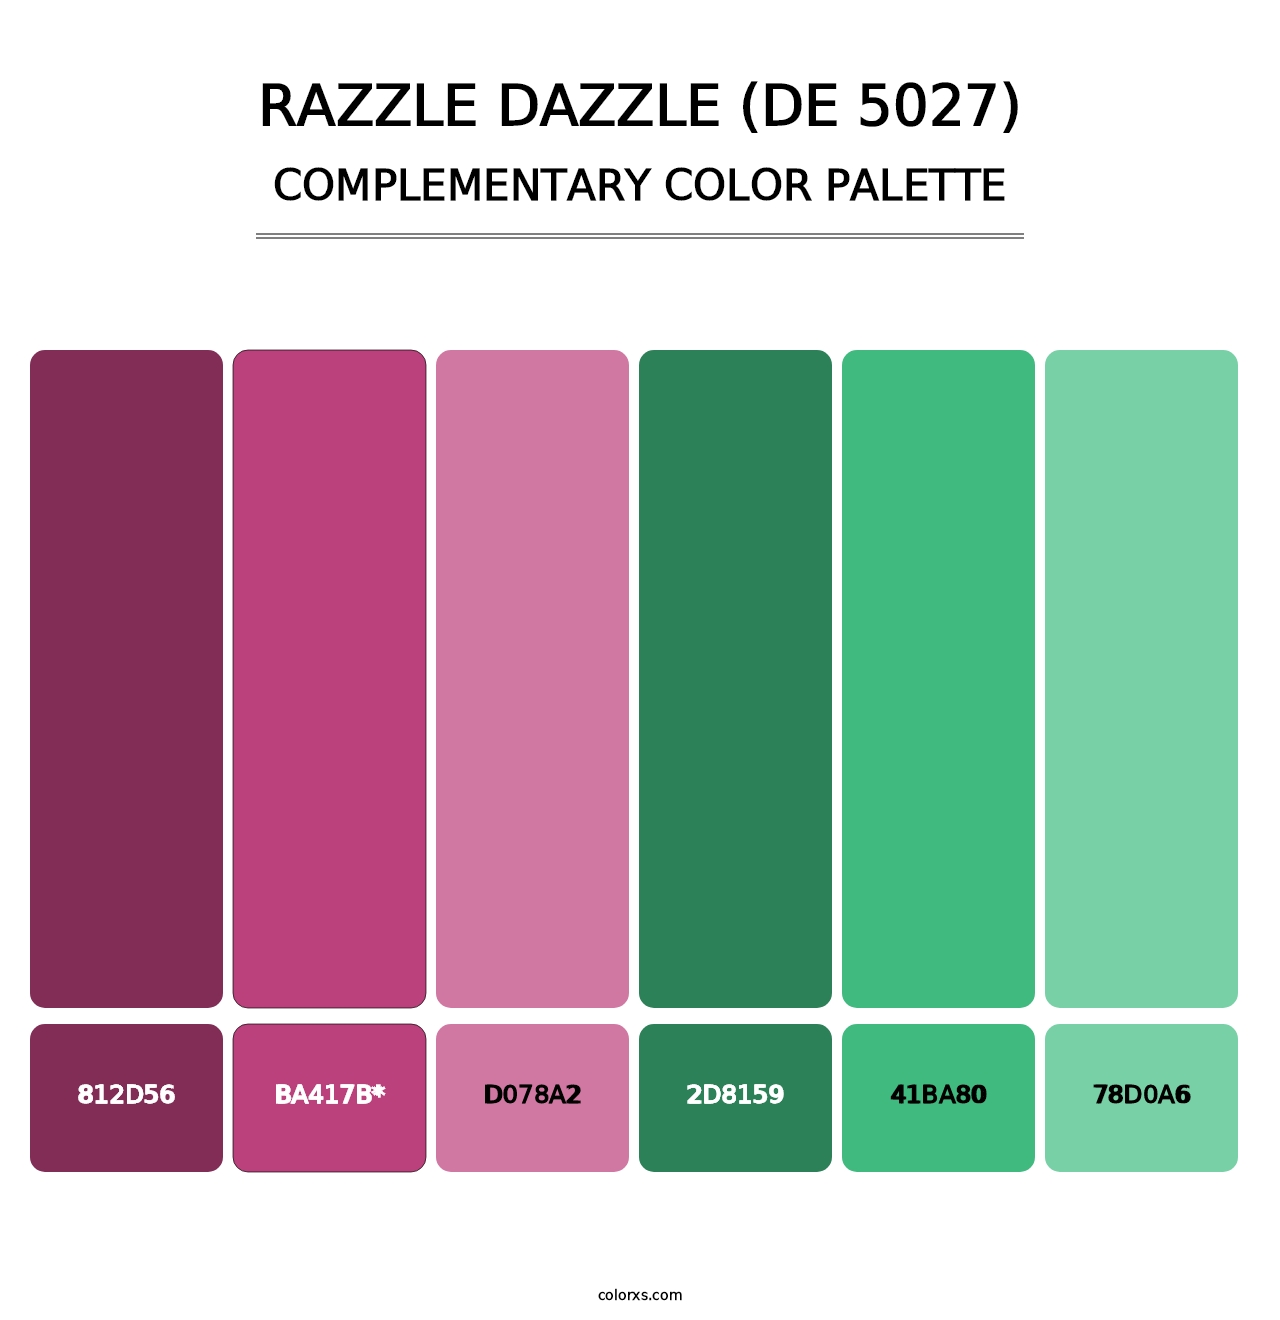 Razzle Dazzle (DE 5027) - Complementary Color Palette